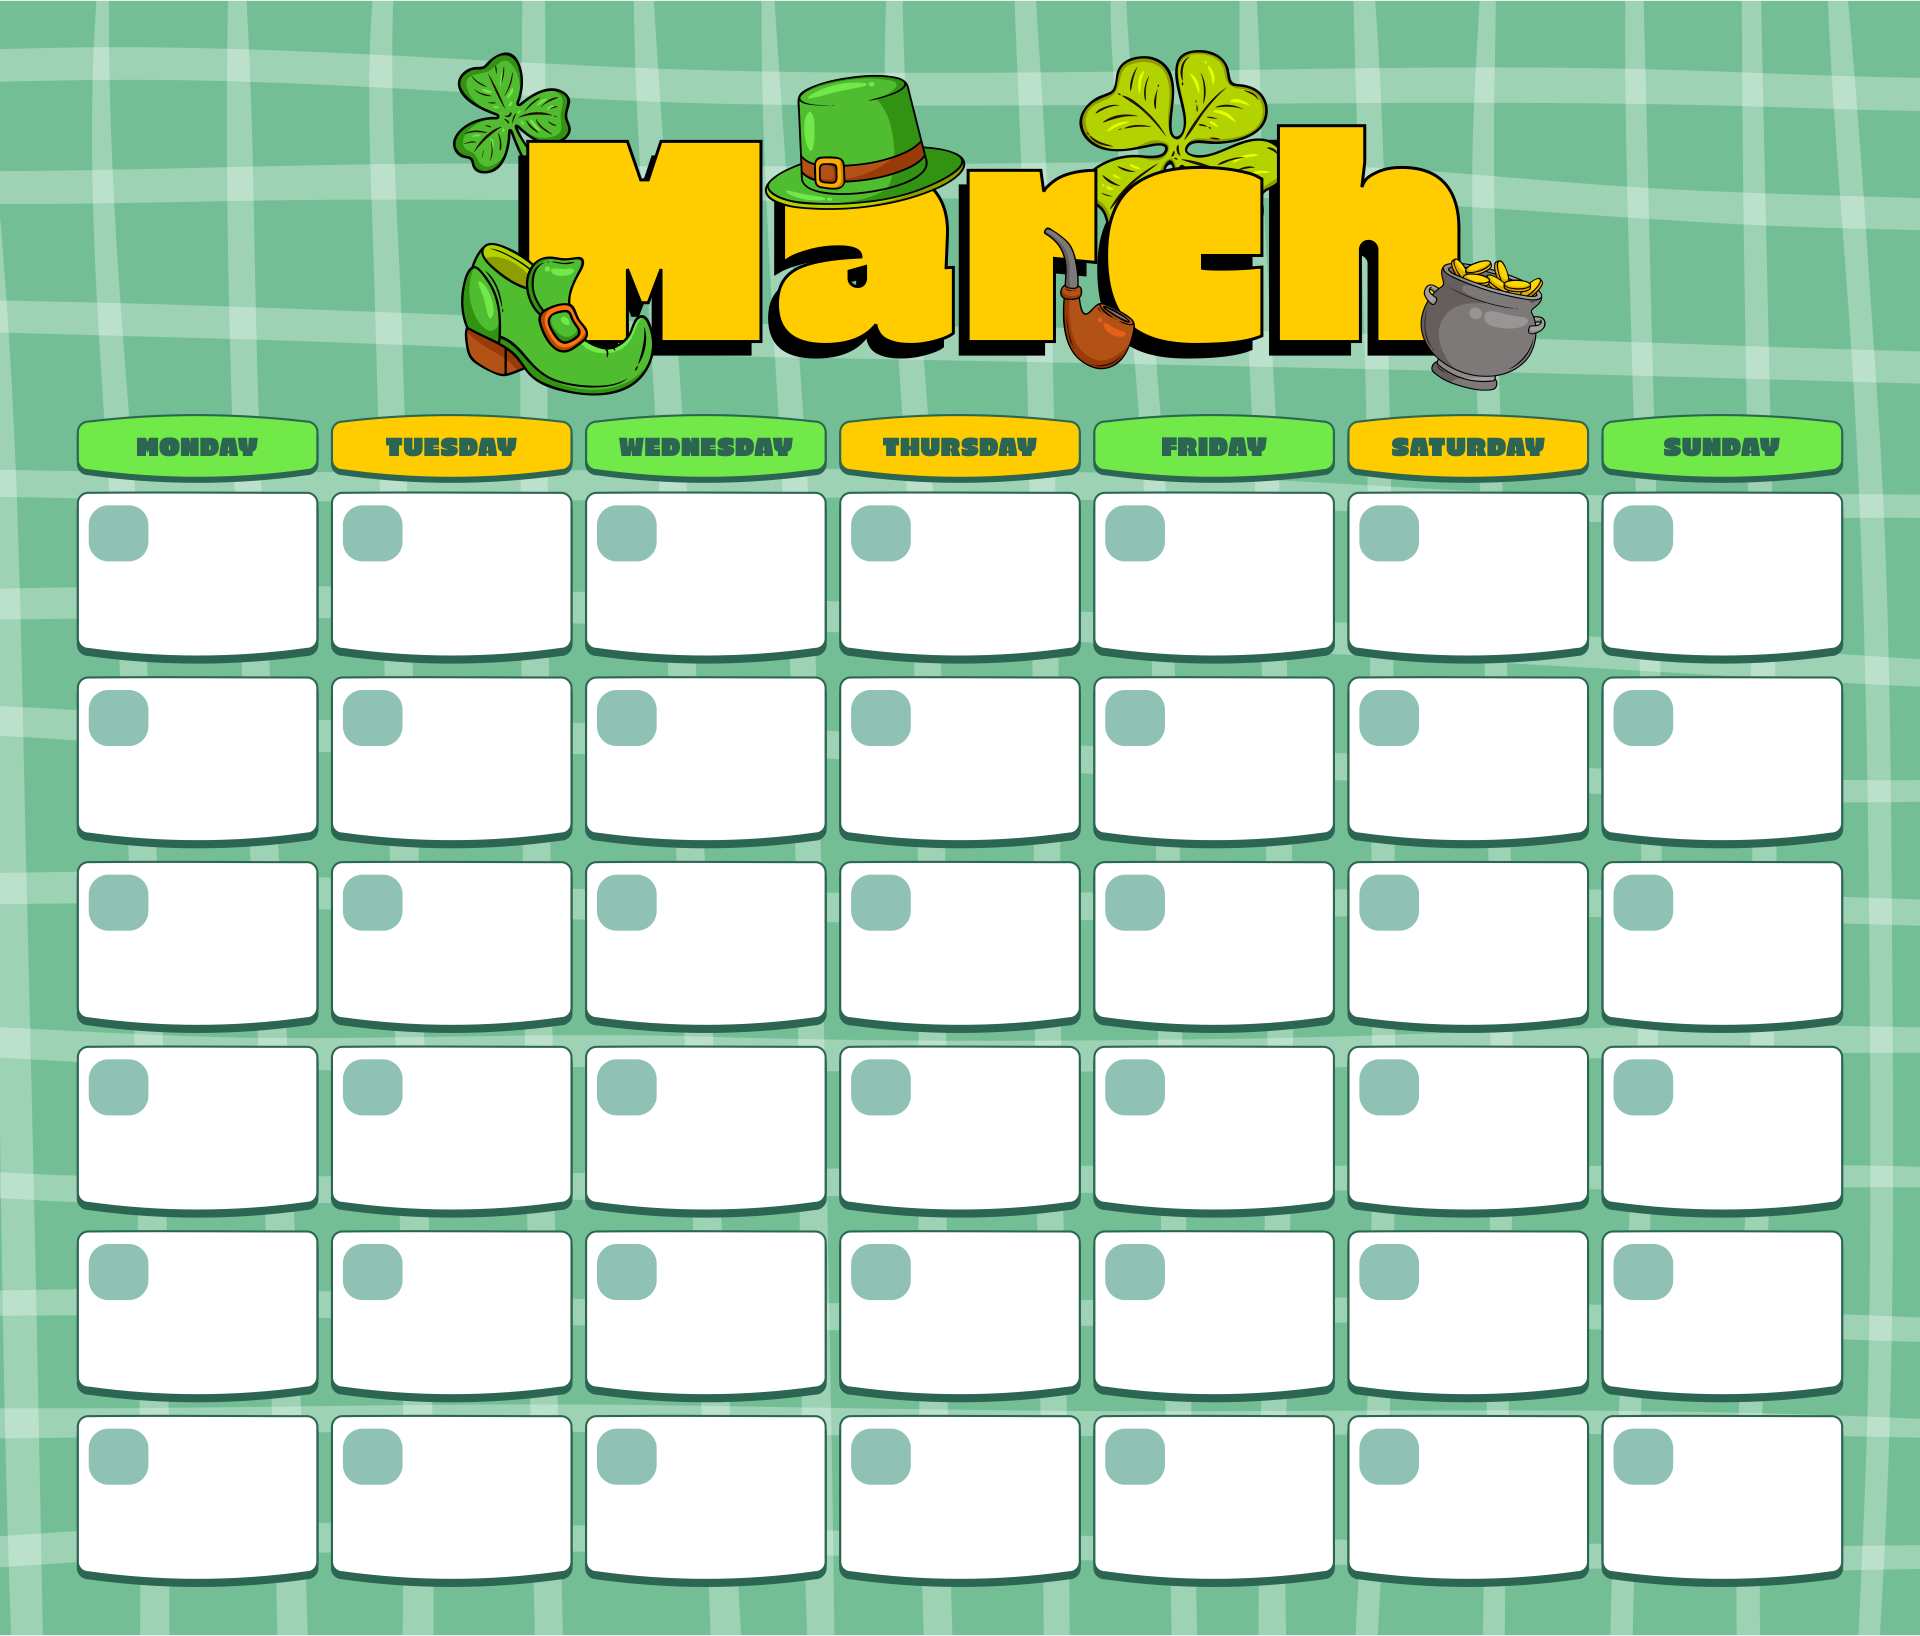 Cute March Calendar 2015